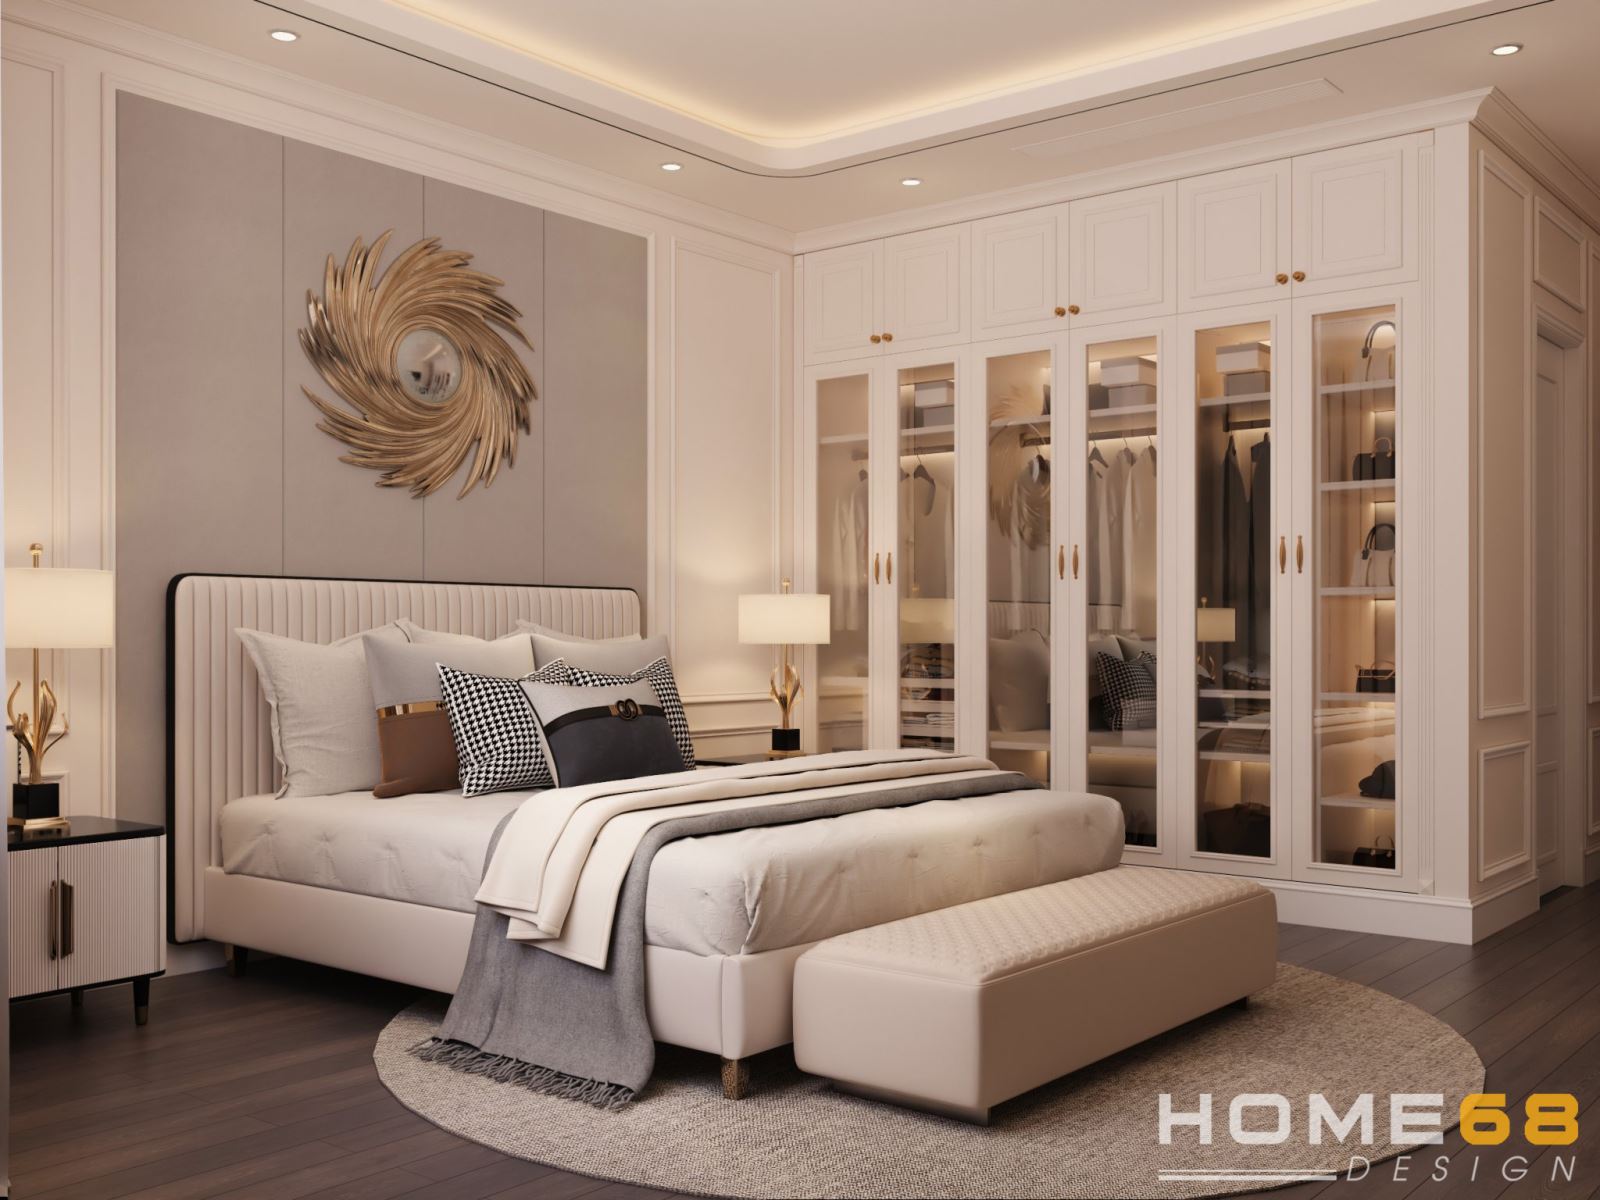 HOME68 thiết kế nội thất phòng ngủ tân cổ điển đẹp, đẳng cấp Hải Phòng